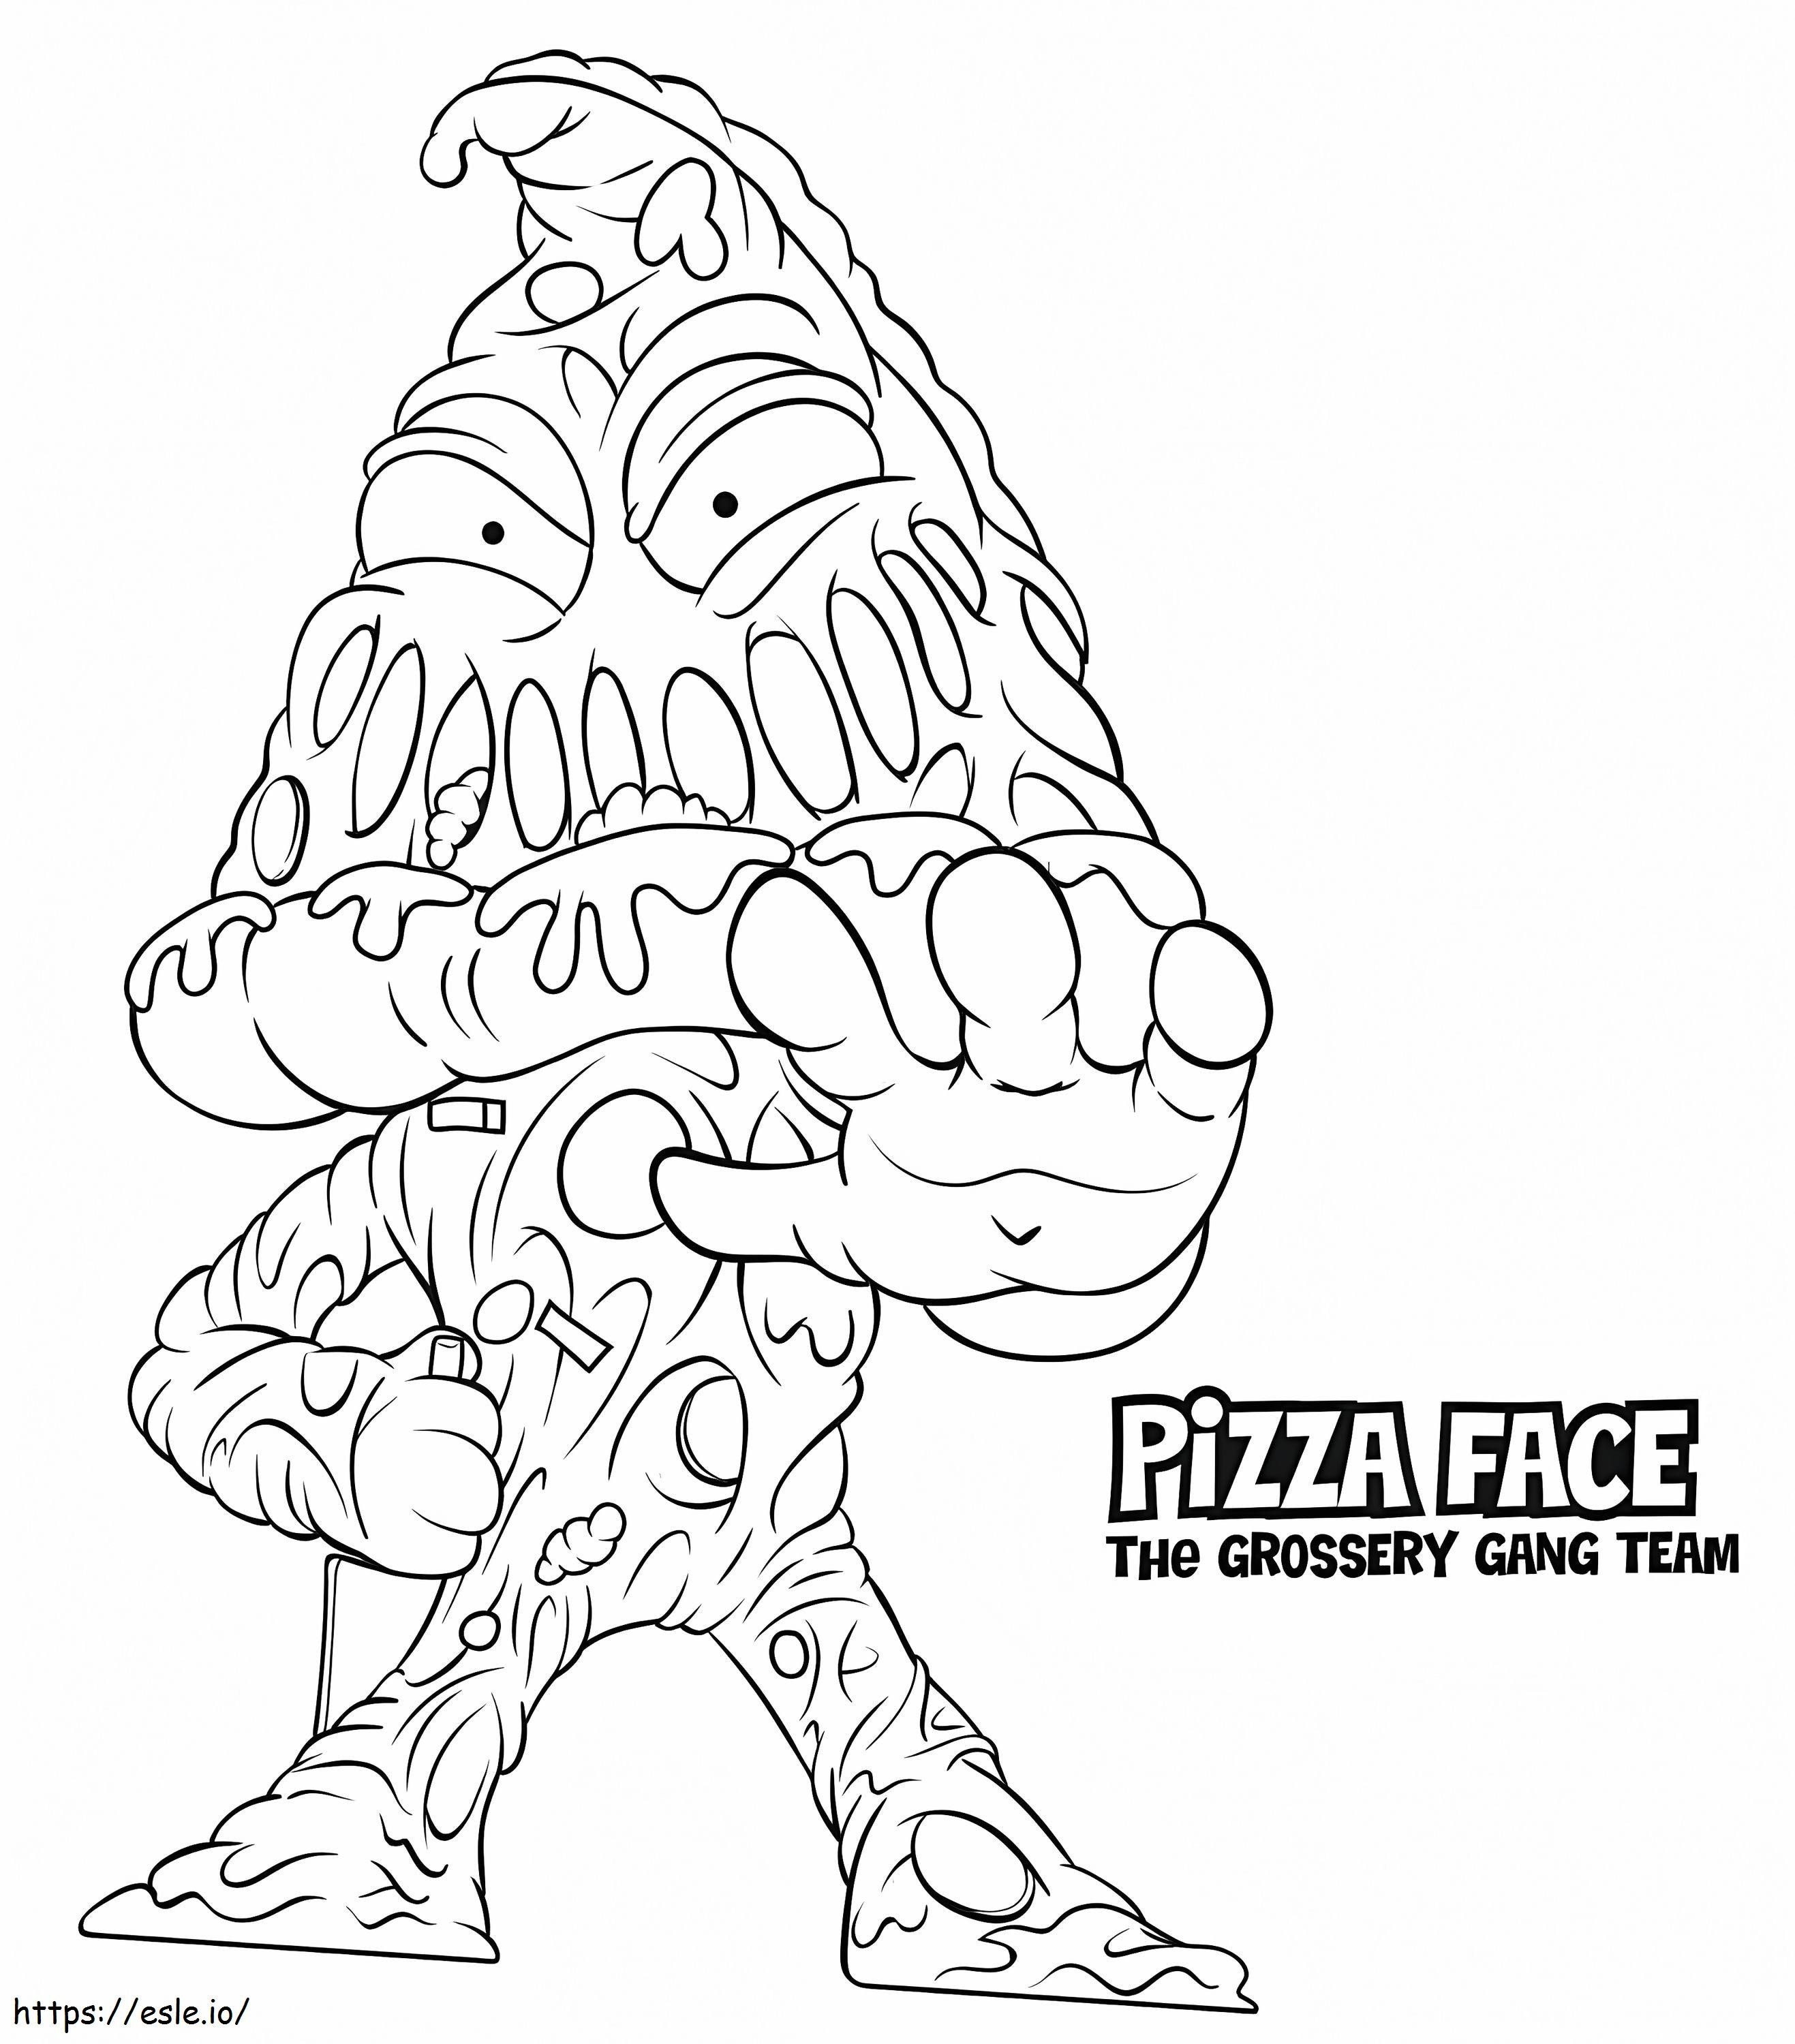 Pizza Face Grossery Çetesi boyama